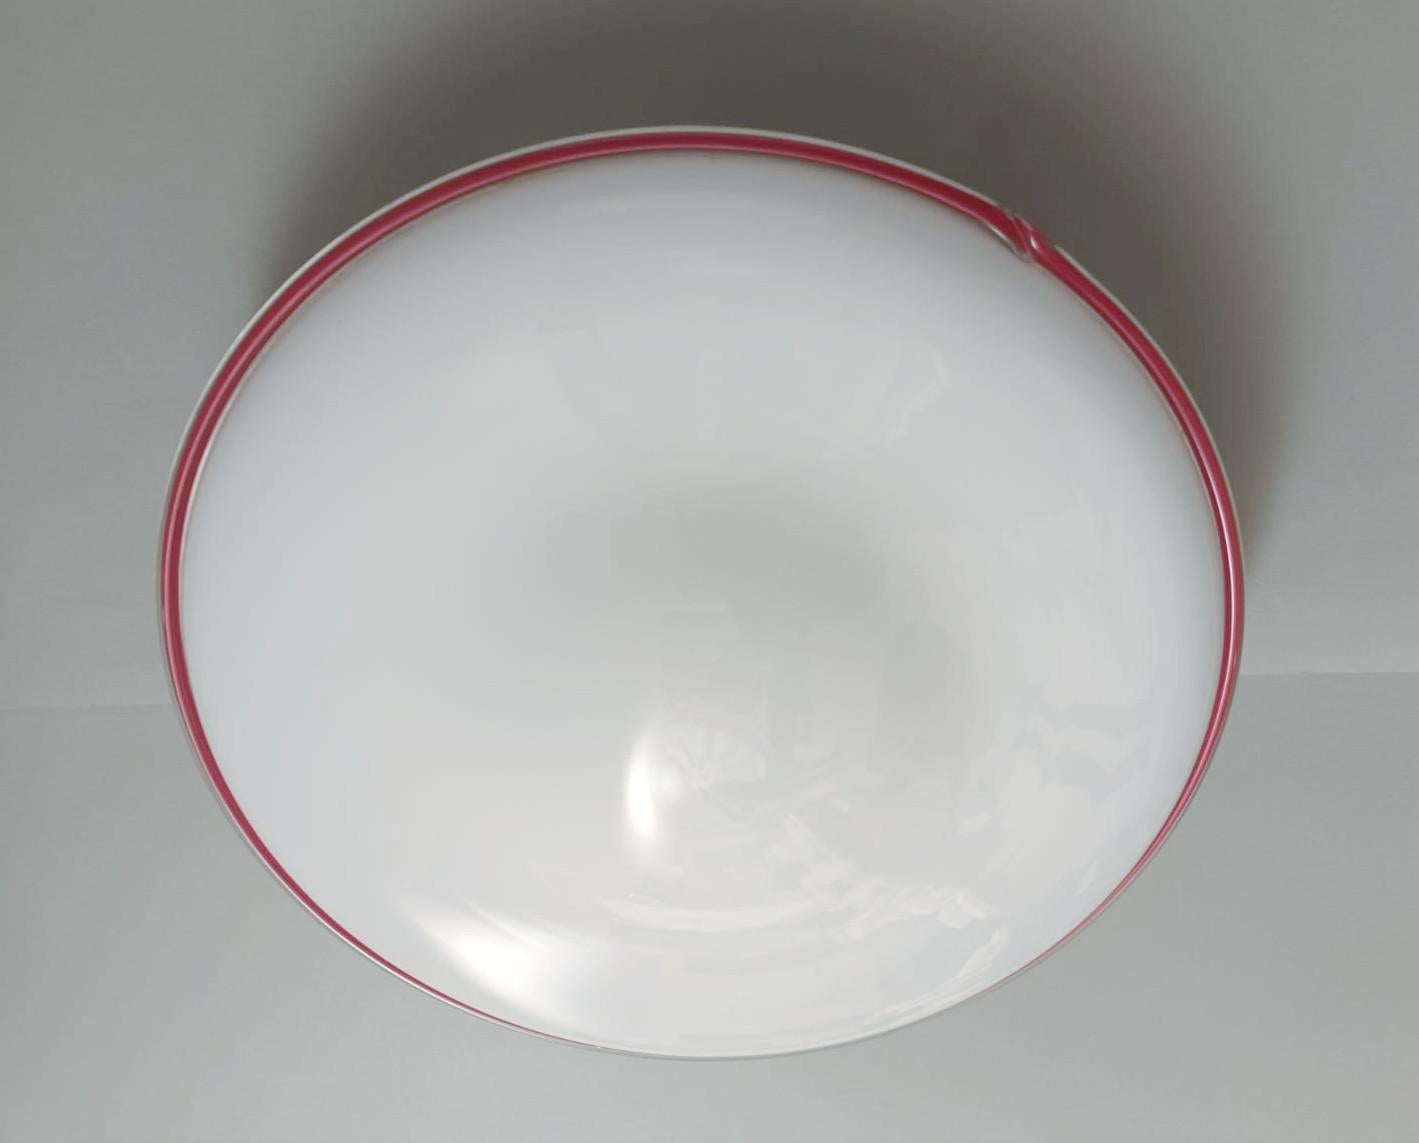 Italienische Vintage-Wandleuchte mit einem einzelnen milchig-weißen Murano-Glasschirm mit rotem Rand / Hergestellt in Italien im Stil von Venini, ca. 1960er Jahre
Maße: Durchmesser 14 Zoll, Höhe 4 Zoll
2 Leuchten / Typ E26 oder E27 / je max. 60W
1